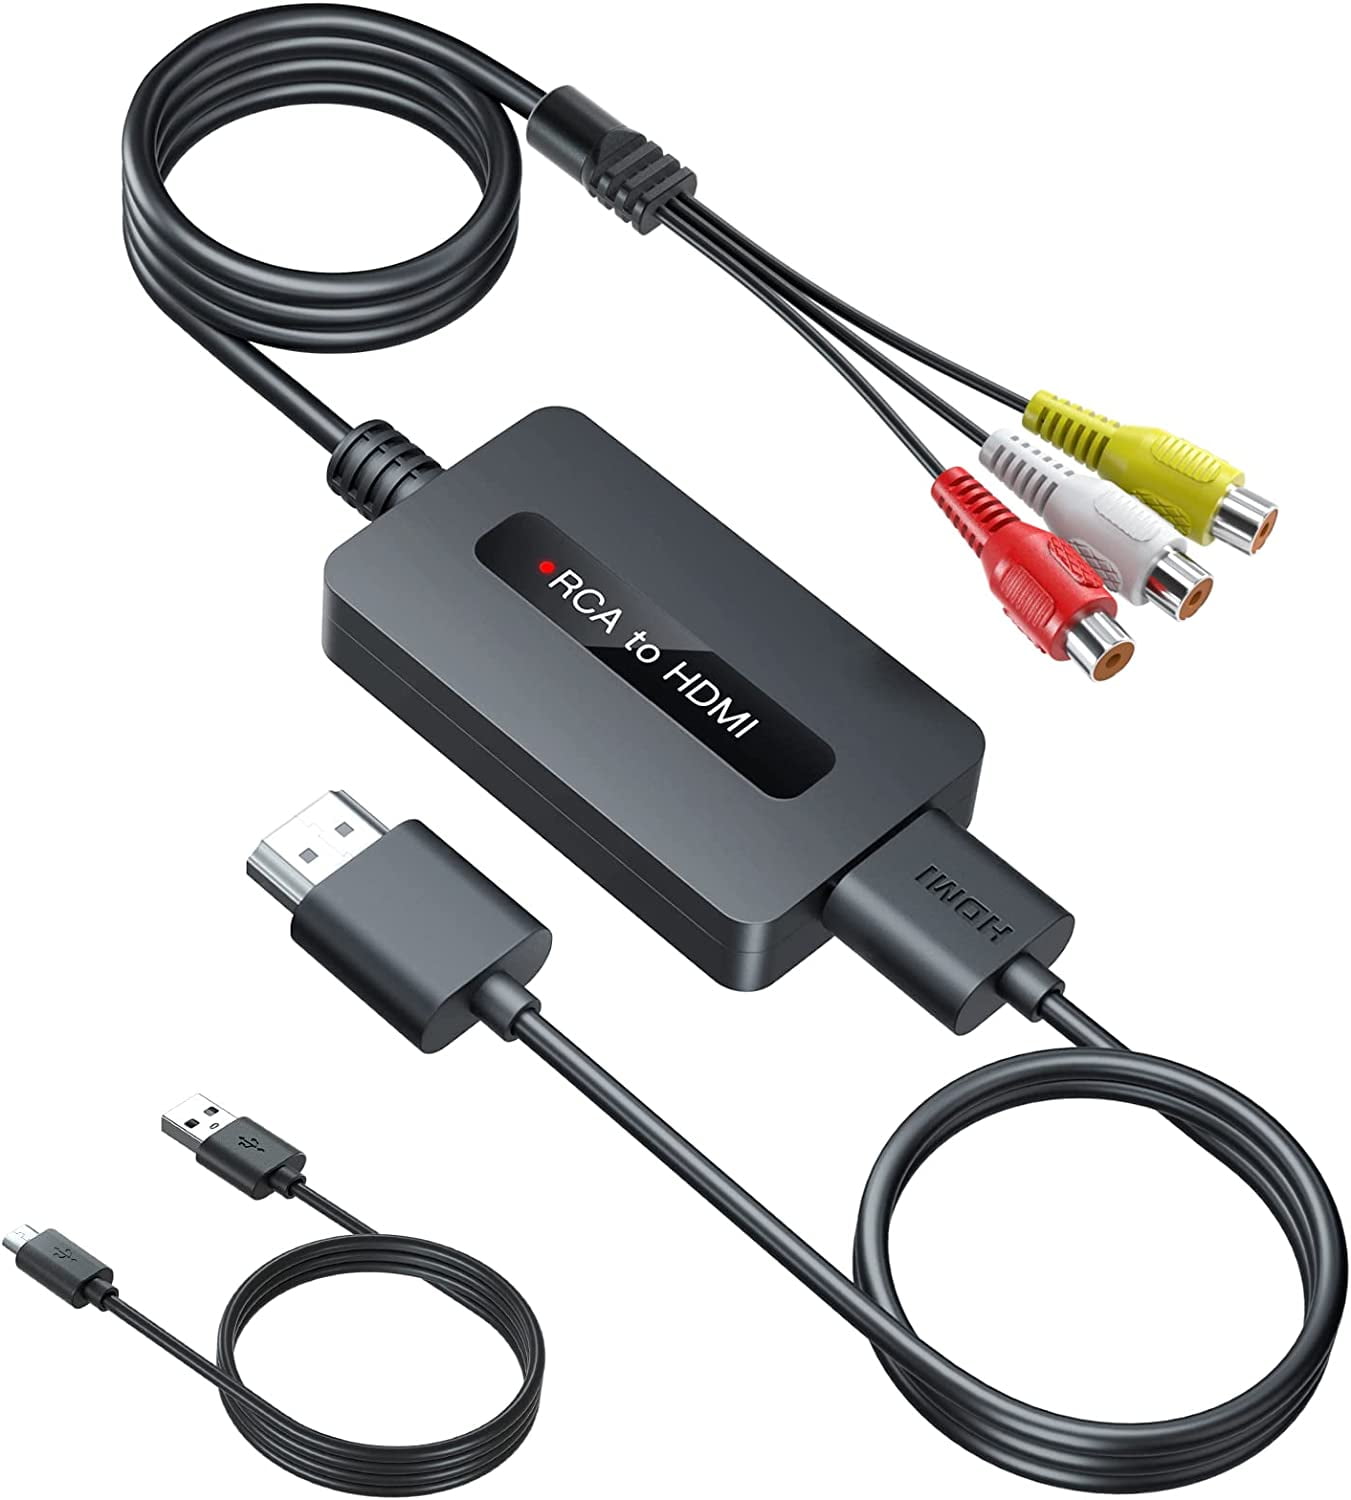 Universal RCA AV to HDMI Adapter - XYAB